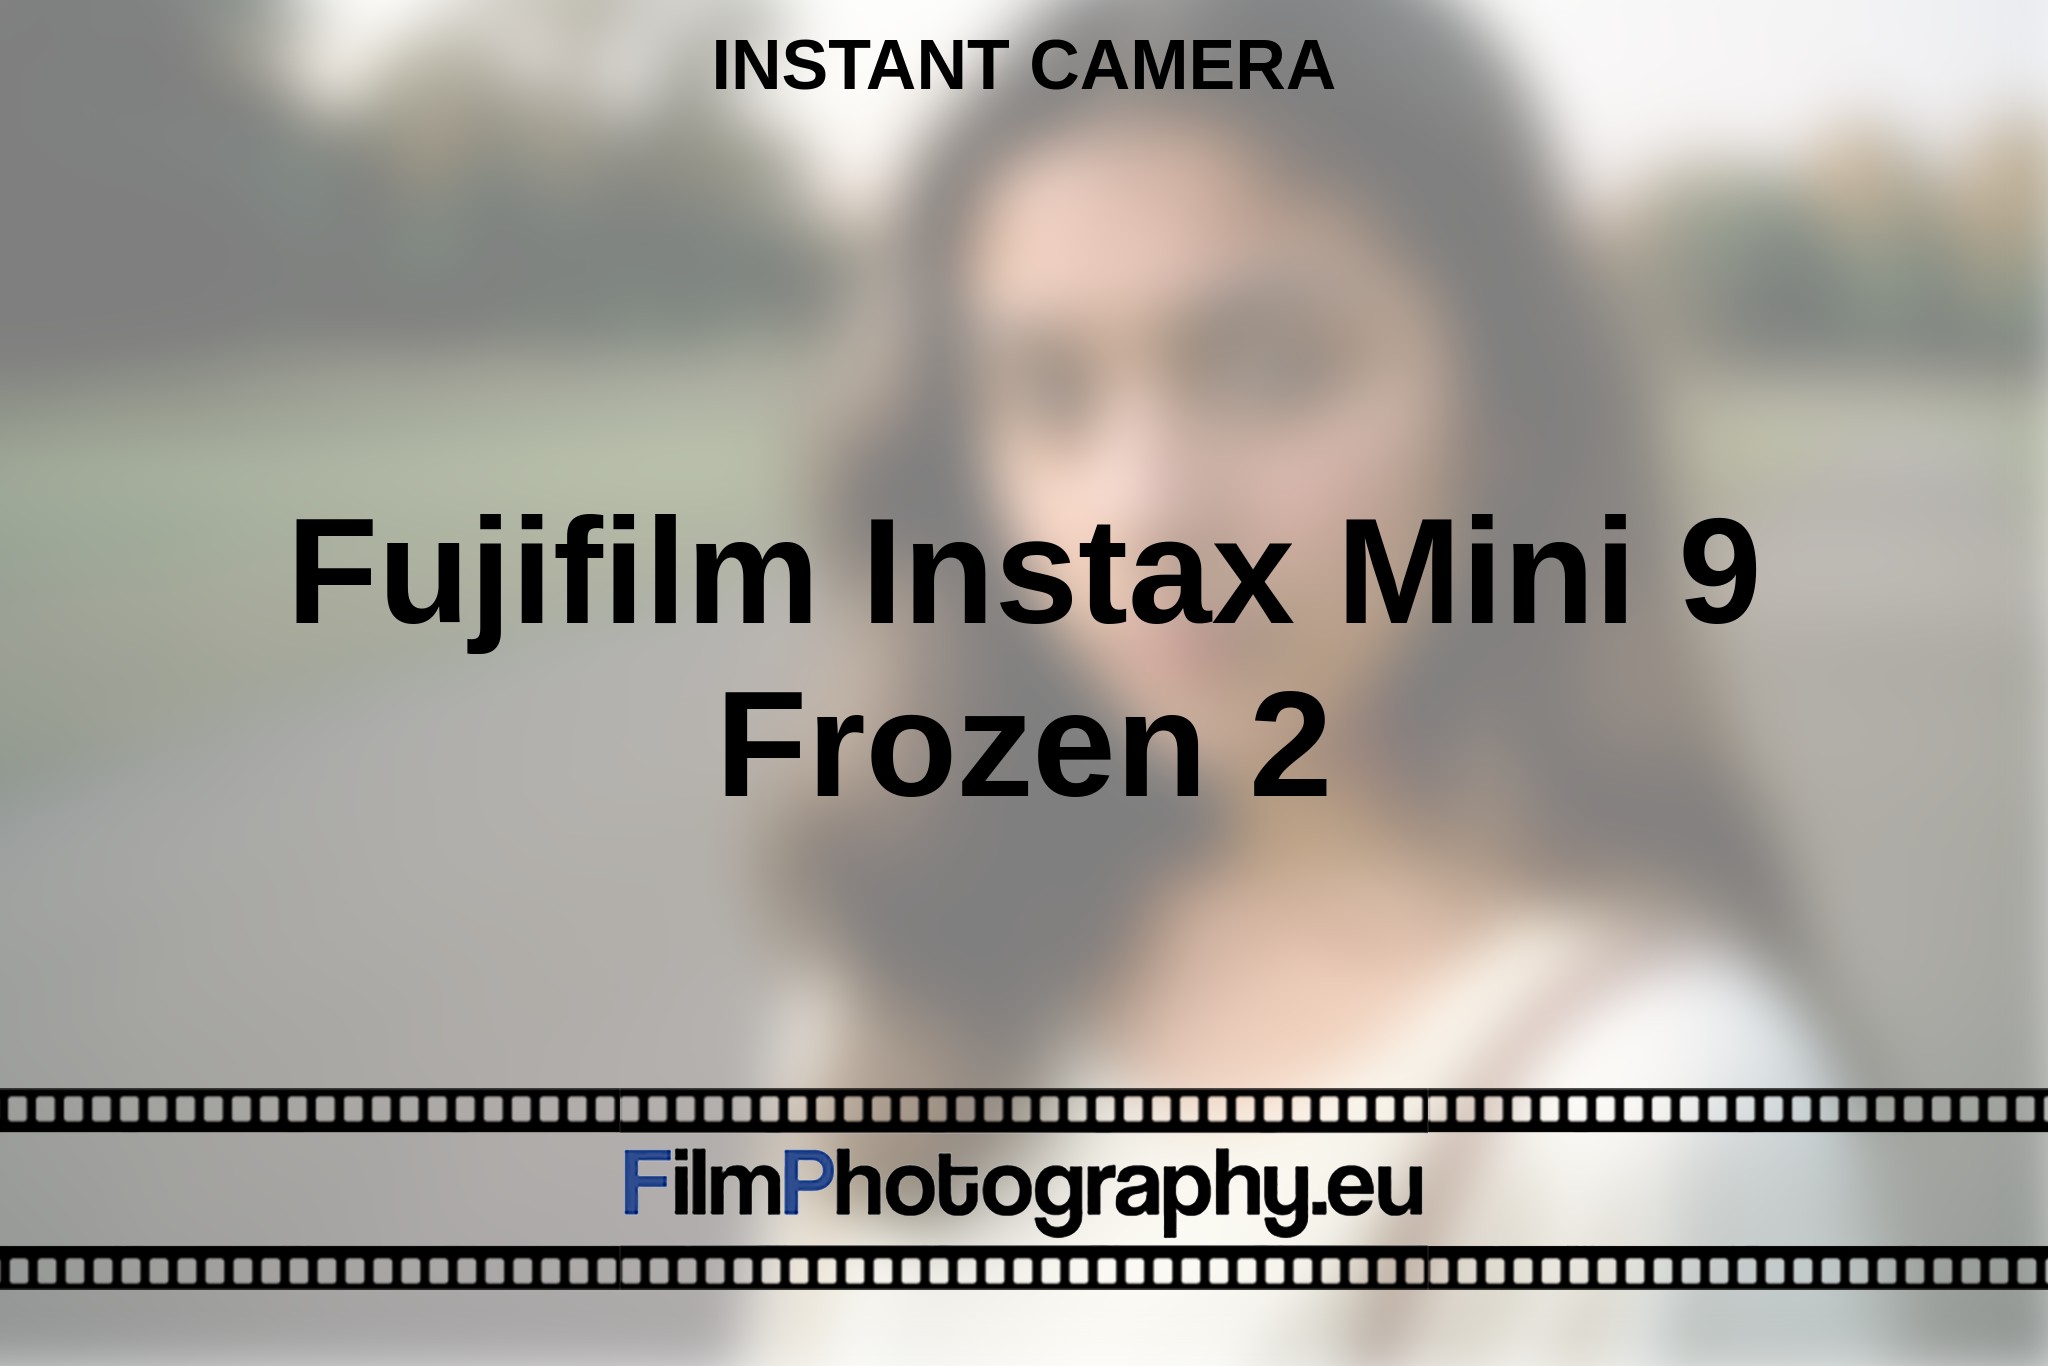 fujifilm-instax-mini-9-frozen-2-instant-camera-en-bnv.jpg